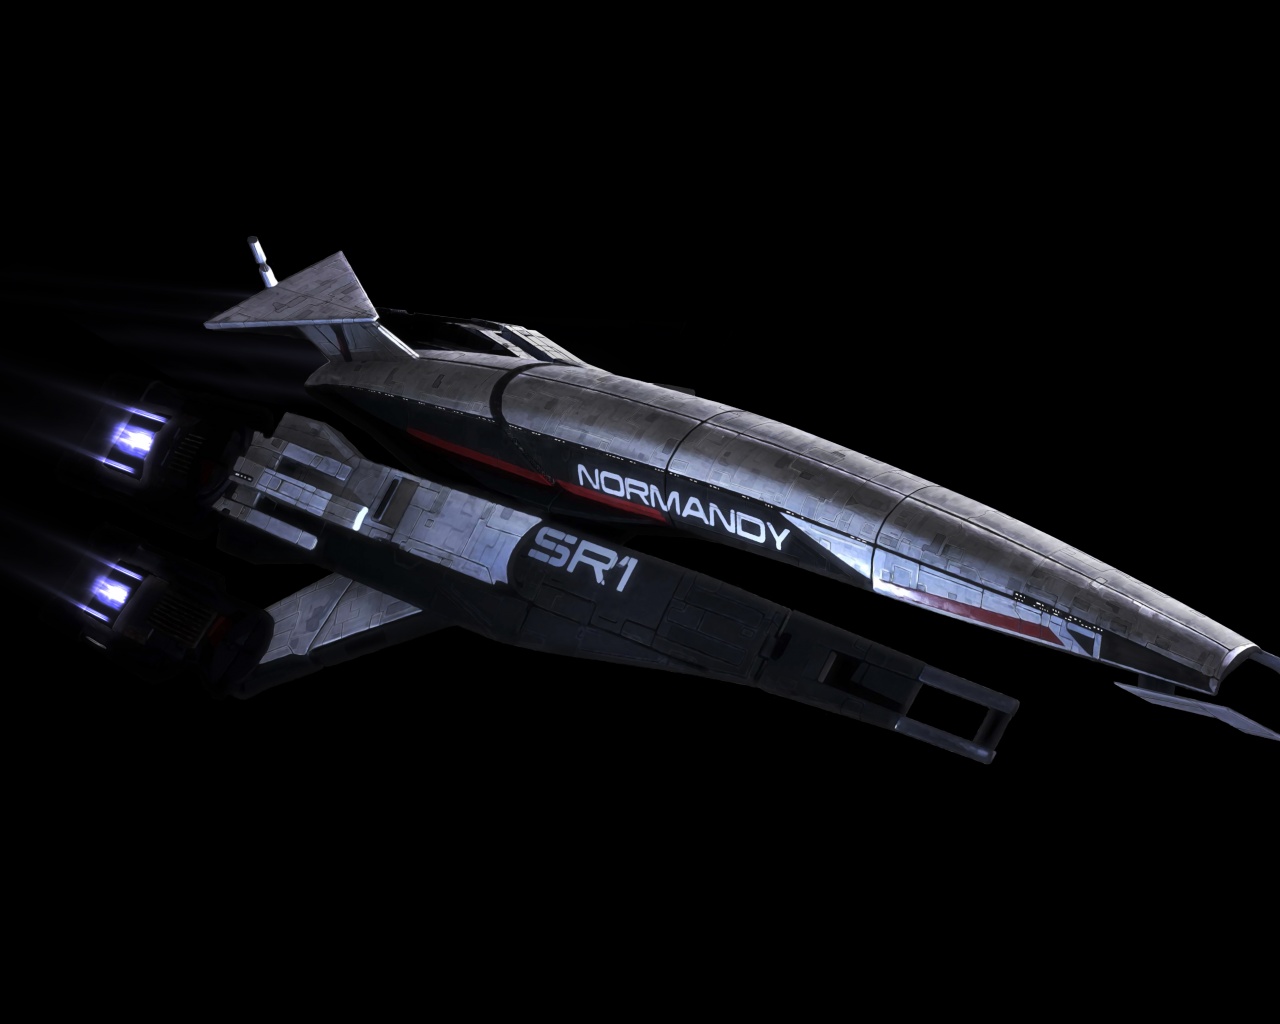 SSV Normandy SR-1 From Mass Effect